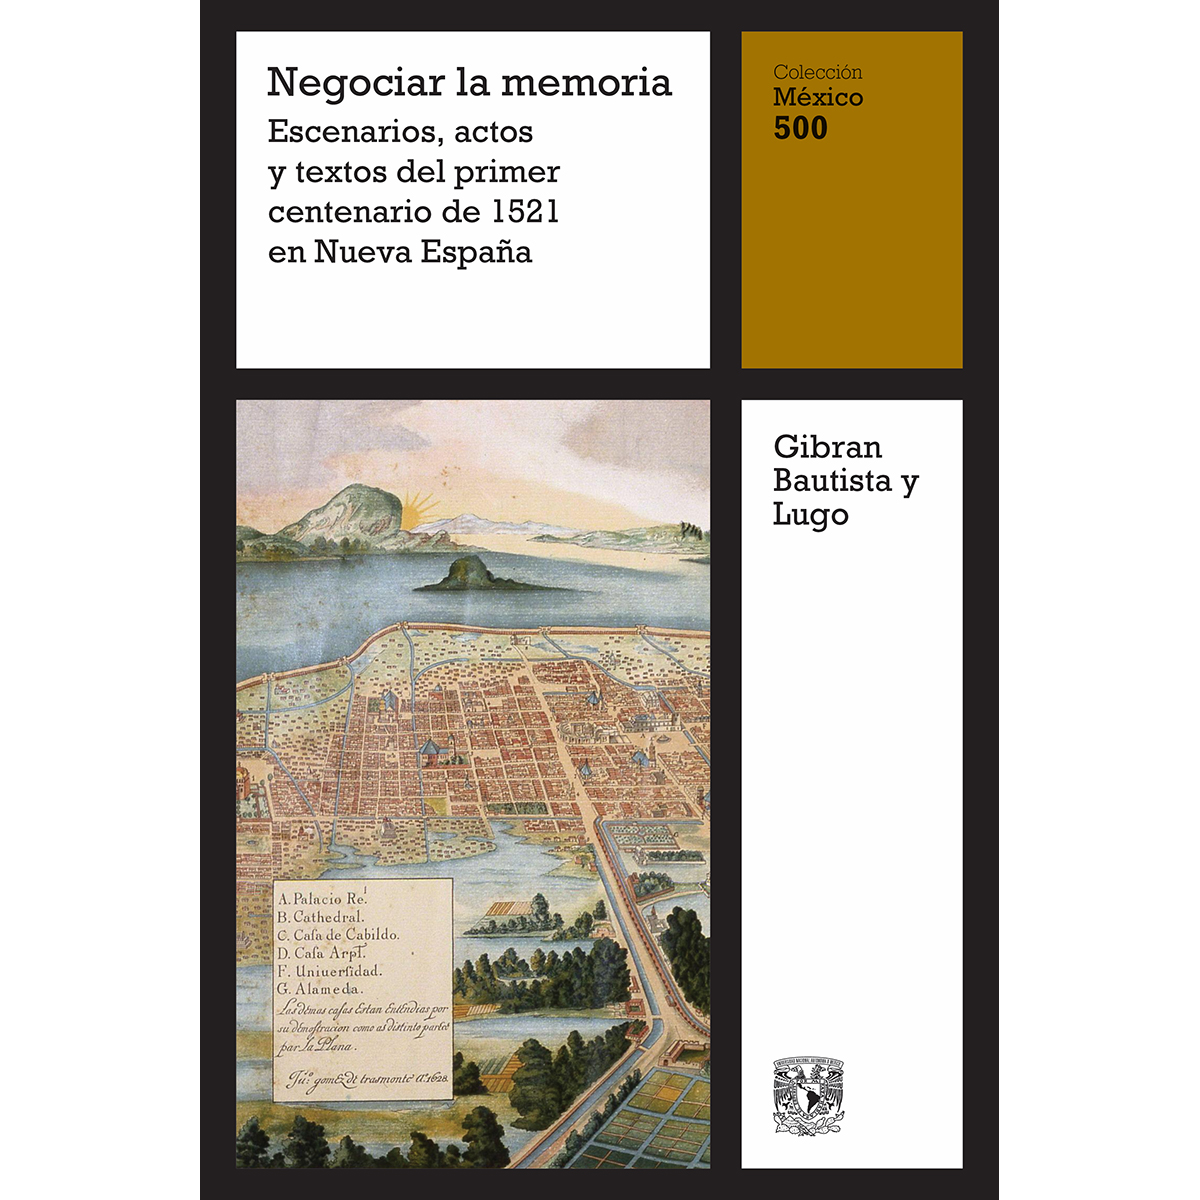 NEGOCIAR LA MEMORIA. ESCENARIOS, ACTOS Y TEXTOS DEL PRIMER CENTENARIO DE 1521 EN NUEVA ESPAÑA, VOL. 15